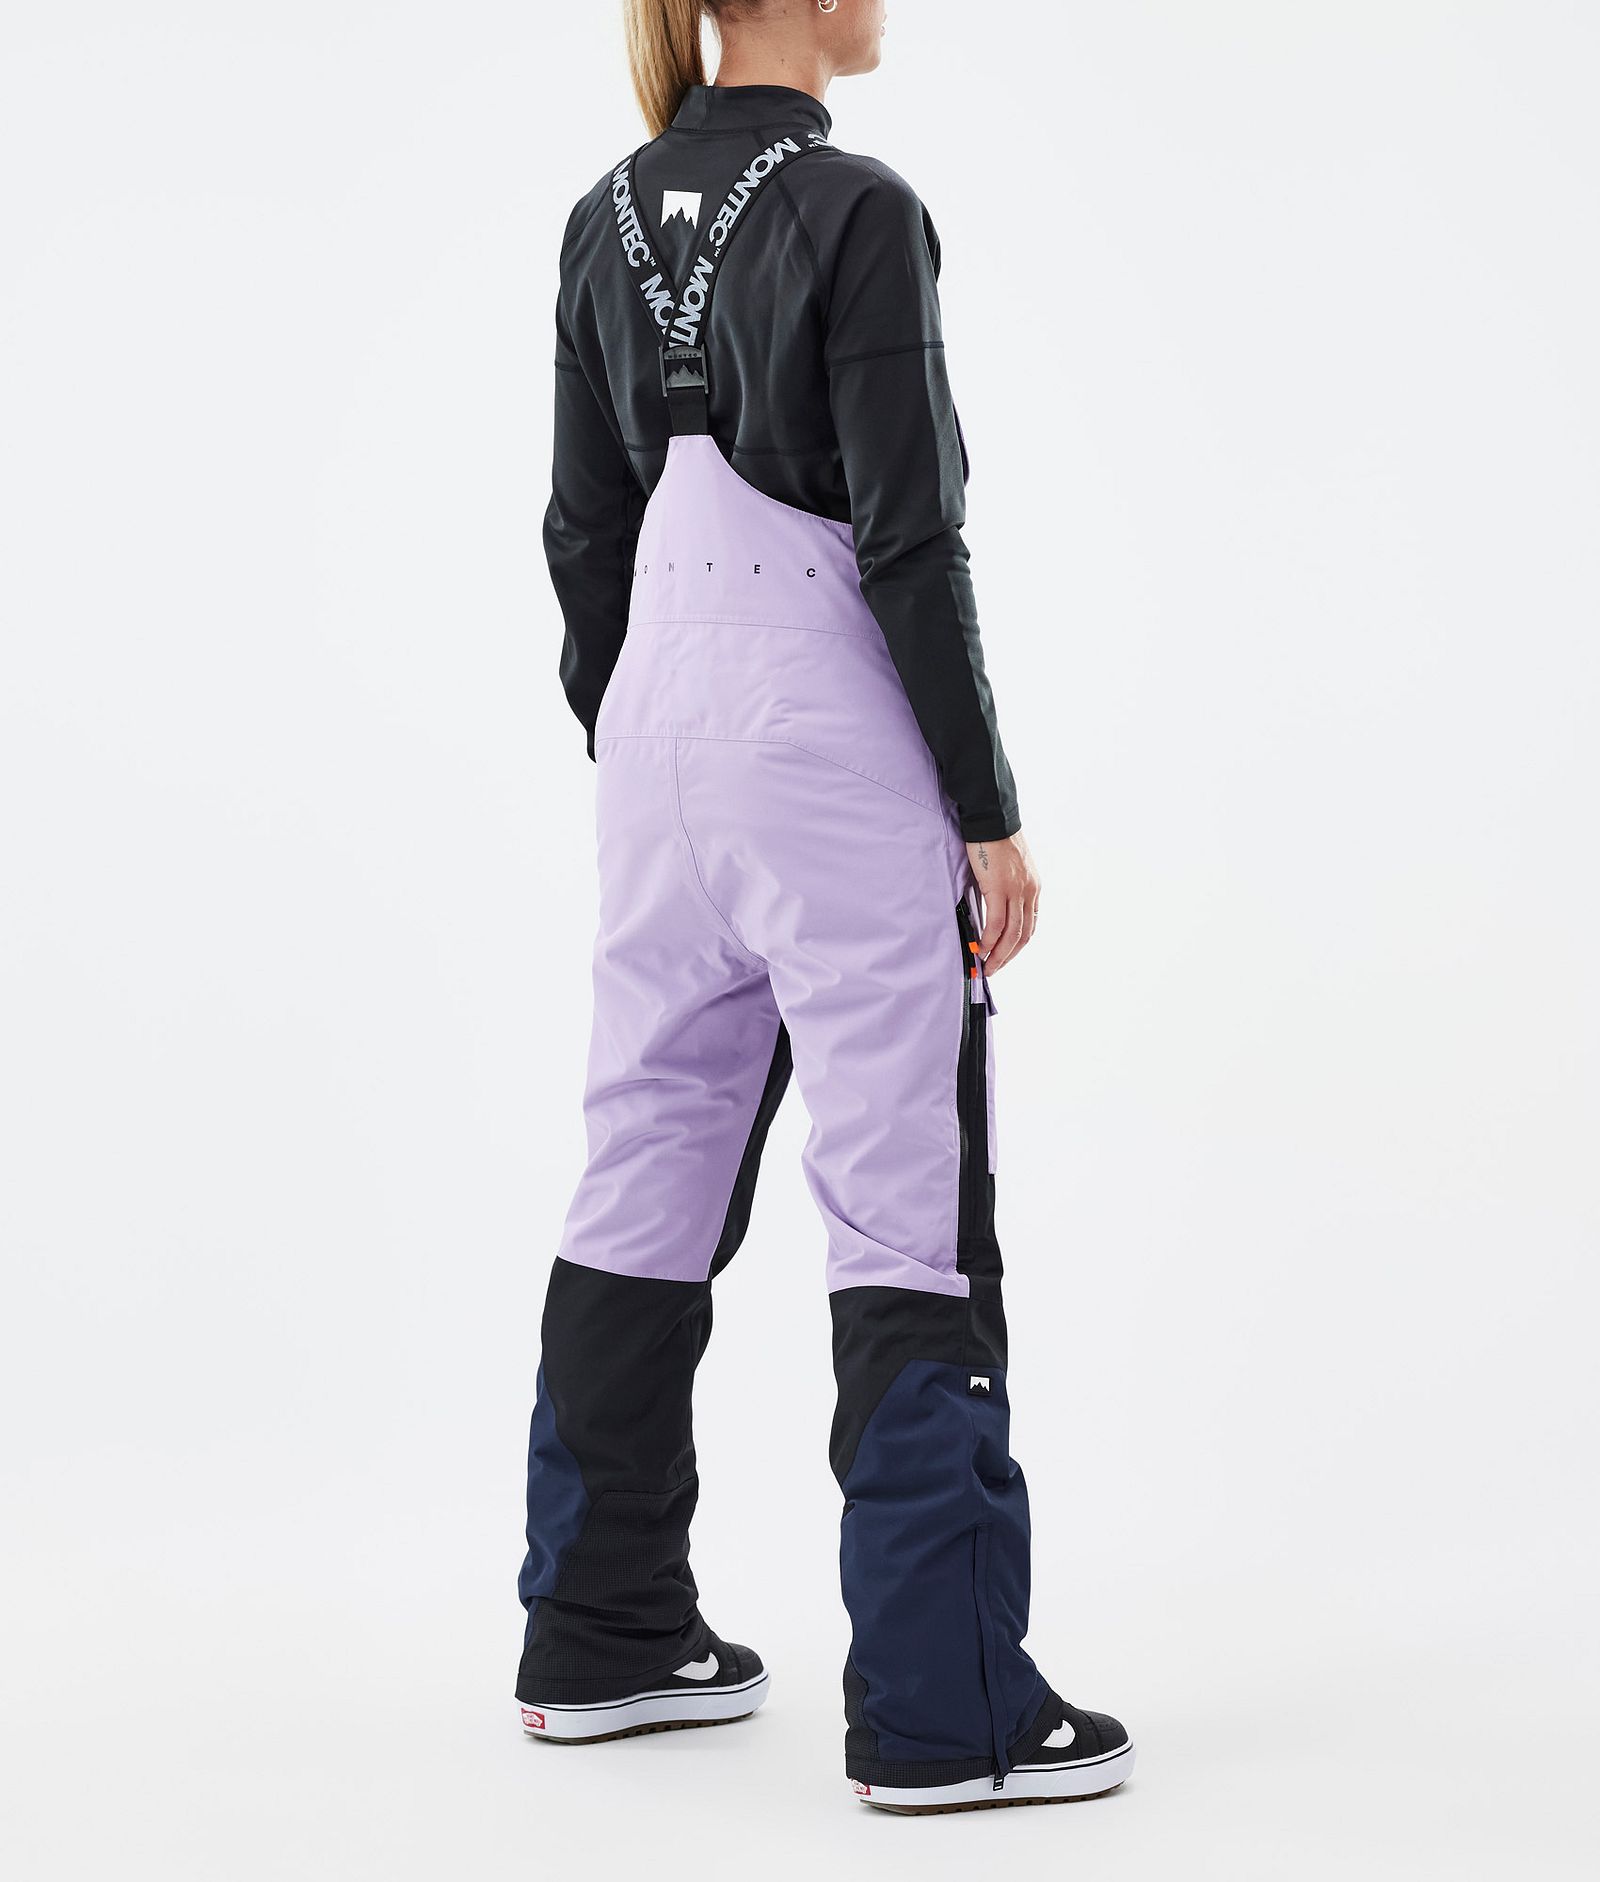 Fawk W Snowboard Pants Women Faded Violet/Black/Dark Blue